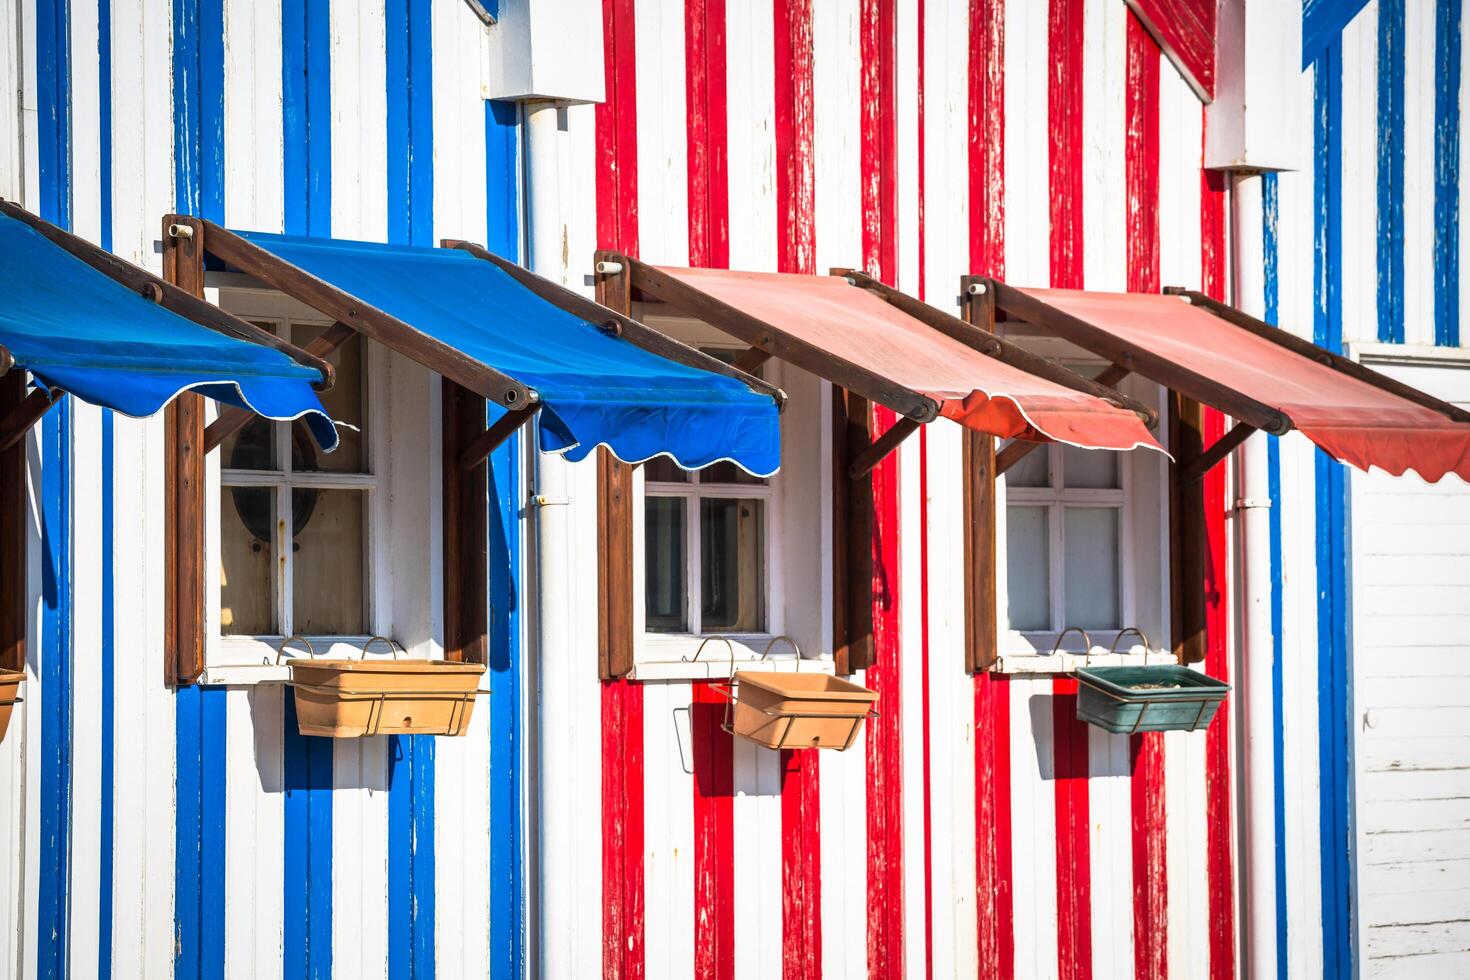 bunt gestreift Fischer Häuser im Blau und Rot, Costa Nova, aveiro, Portugal foto